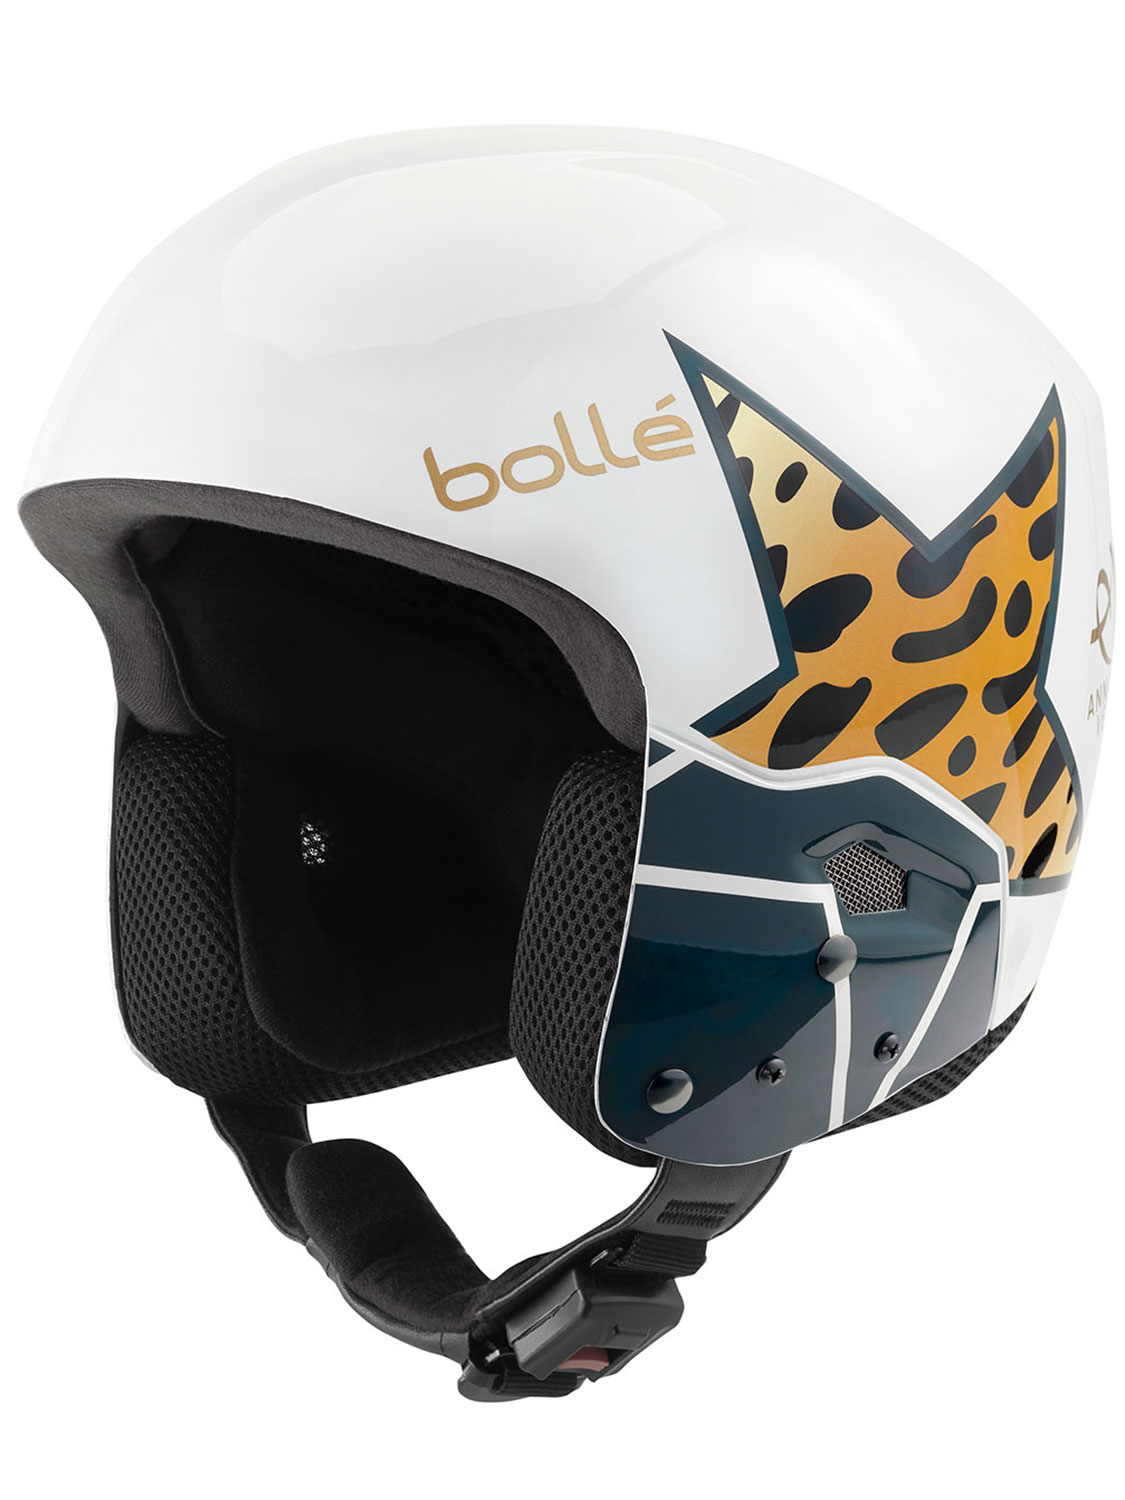 Bolle Womens Medalist Anna Veith Race Helmet White - Size: 53-54